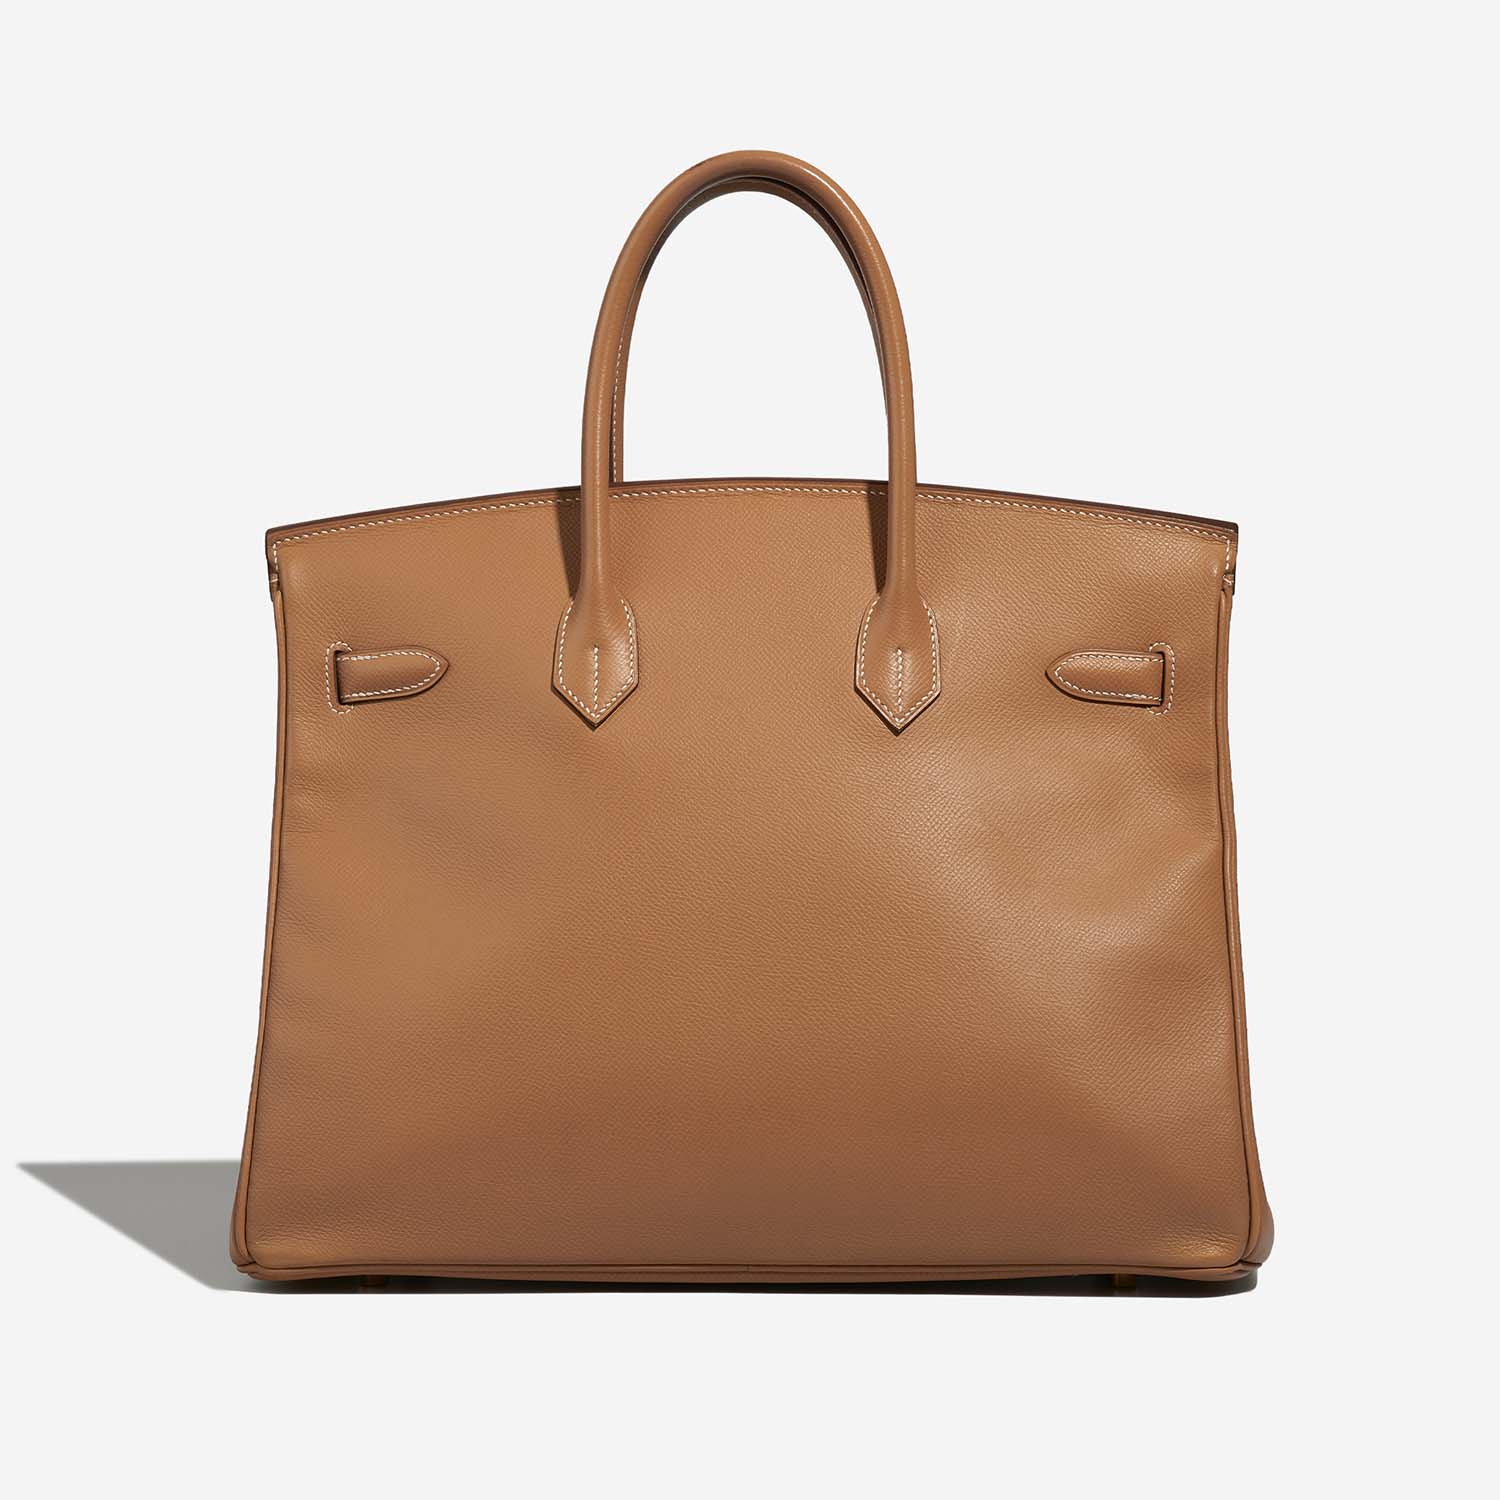 Hermès Birkin 35 Tabac-Camel Back | Verkaufen Sie Ihre Designer-Tasche auf Saclab.com